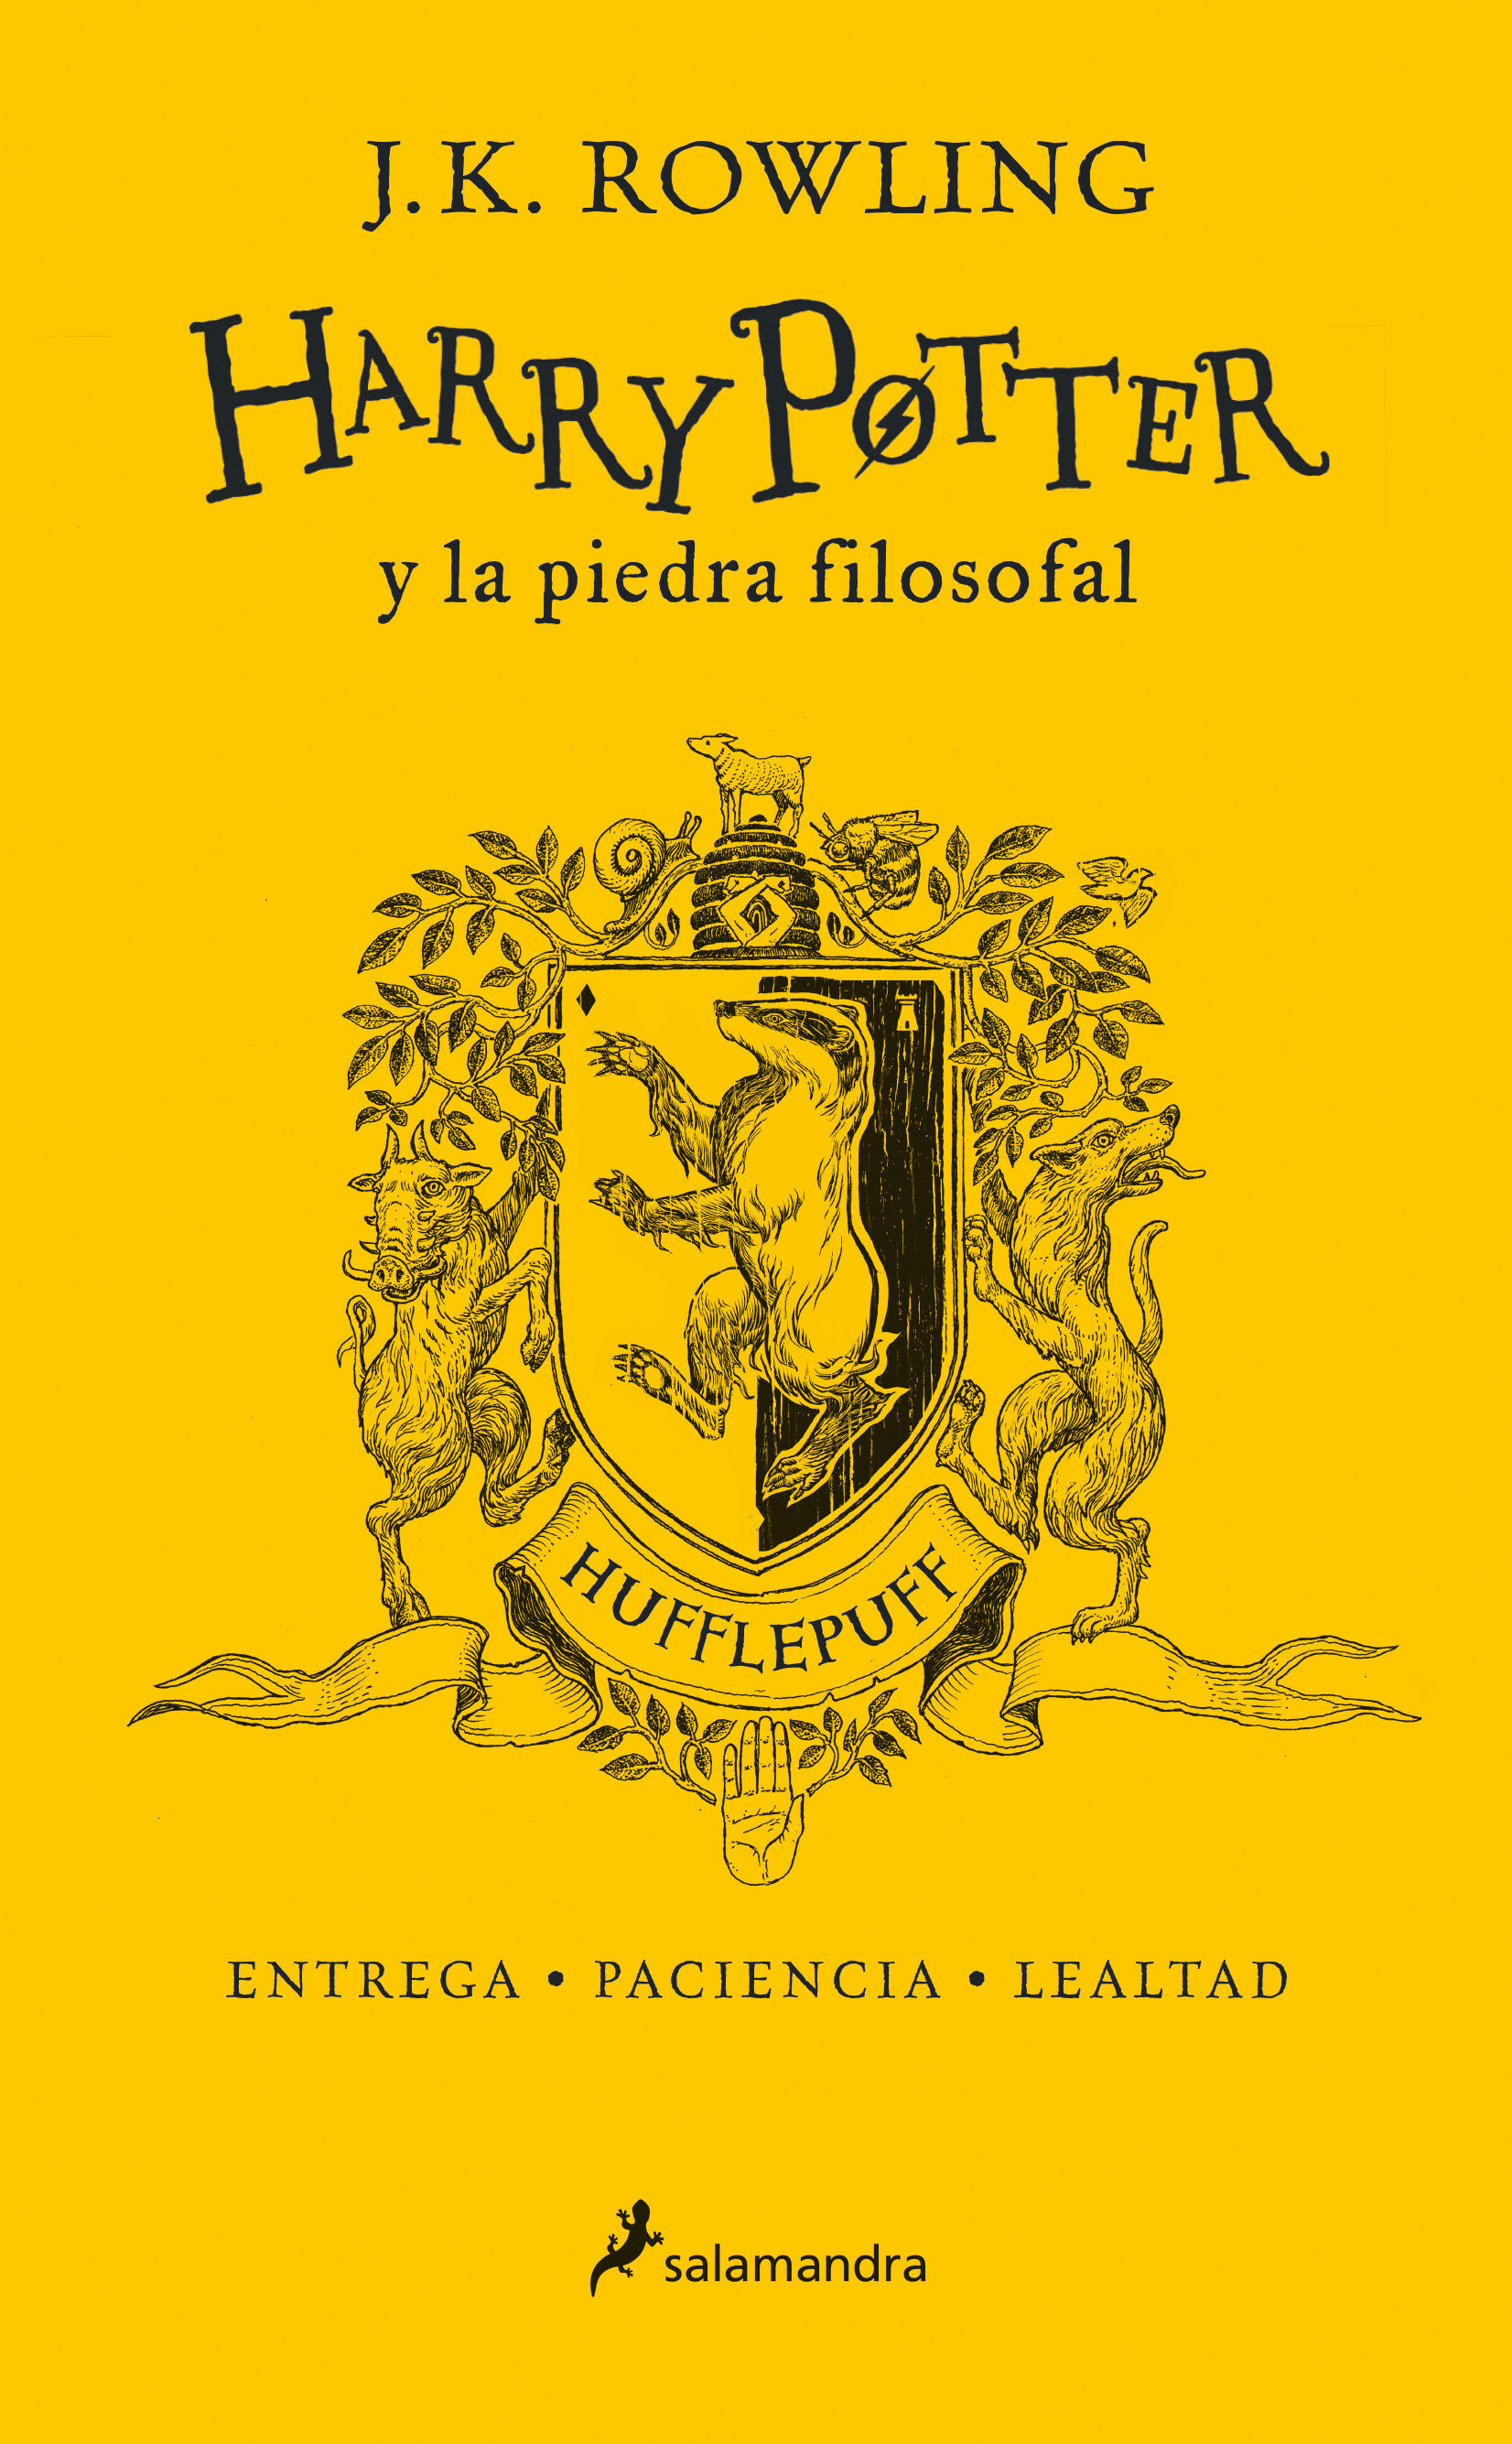 HARRY POTTER Y LA PIEDRA FILOSOFAL (EDICIÓN HUFFLEPUFF DEL 20º ANIVERSARIO) (HAR